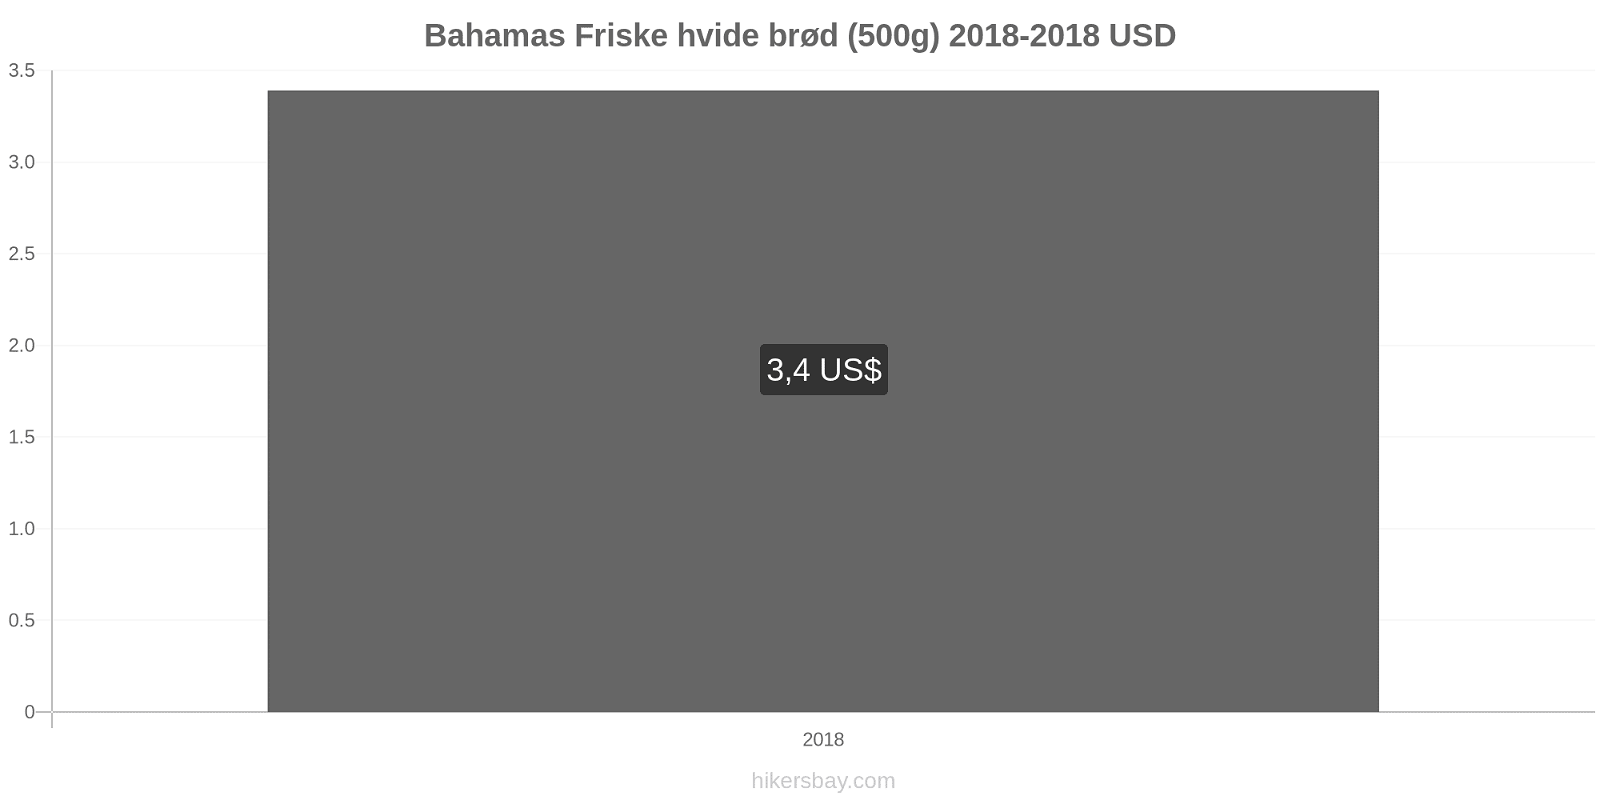 Bahamas prisændringer Friske hvide brød (500g) hikersbay.com